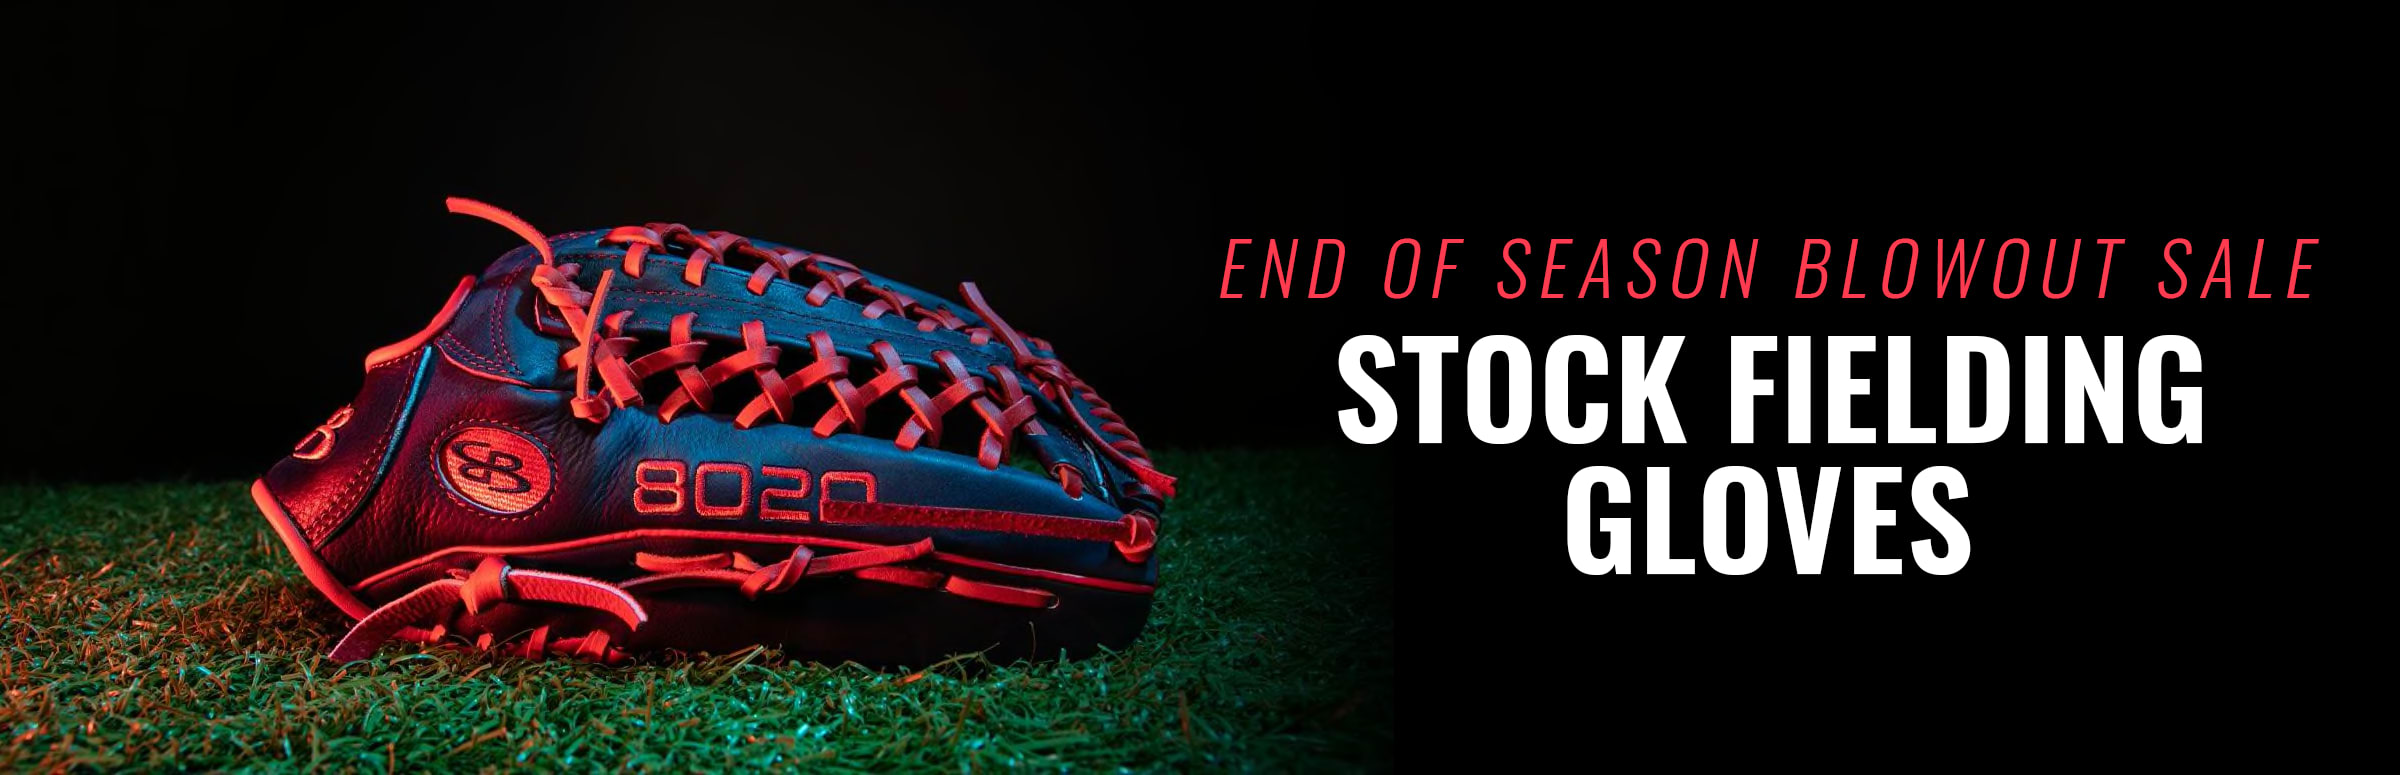 End of Season Blowout Sale - Stock Fielding Gloves